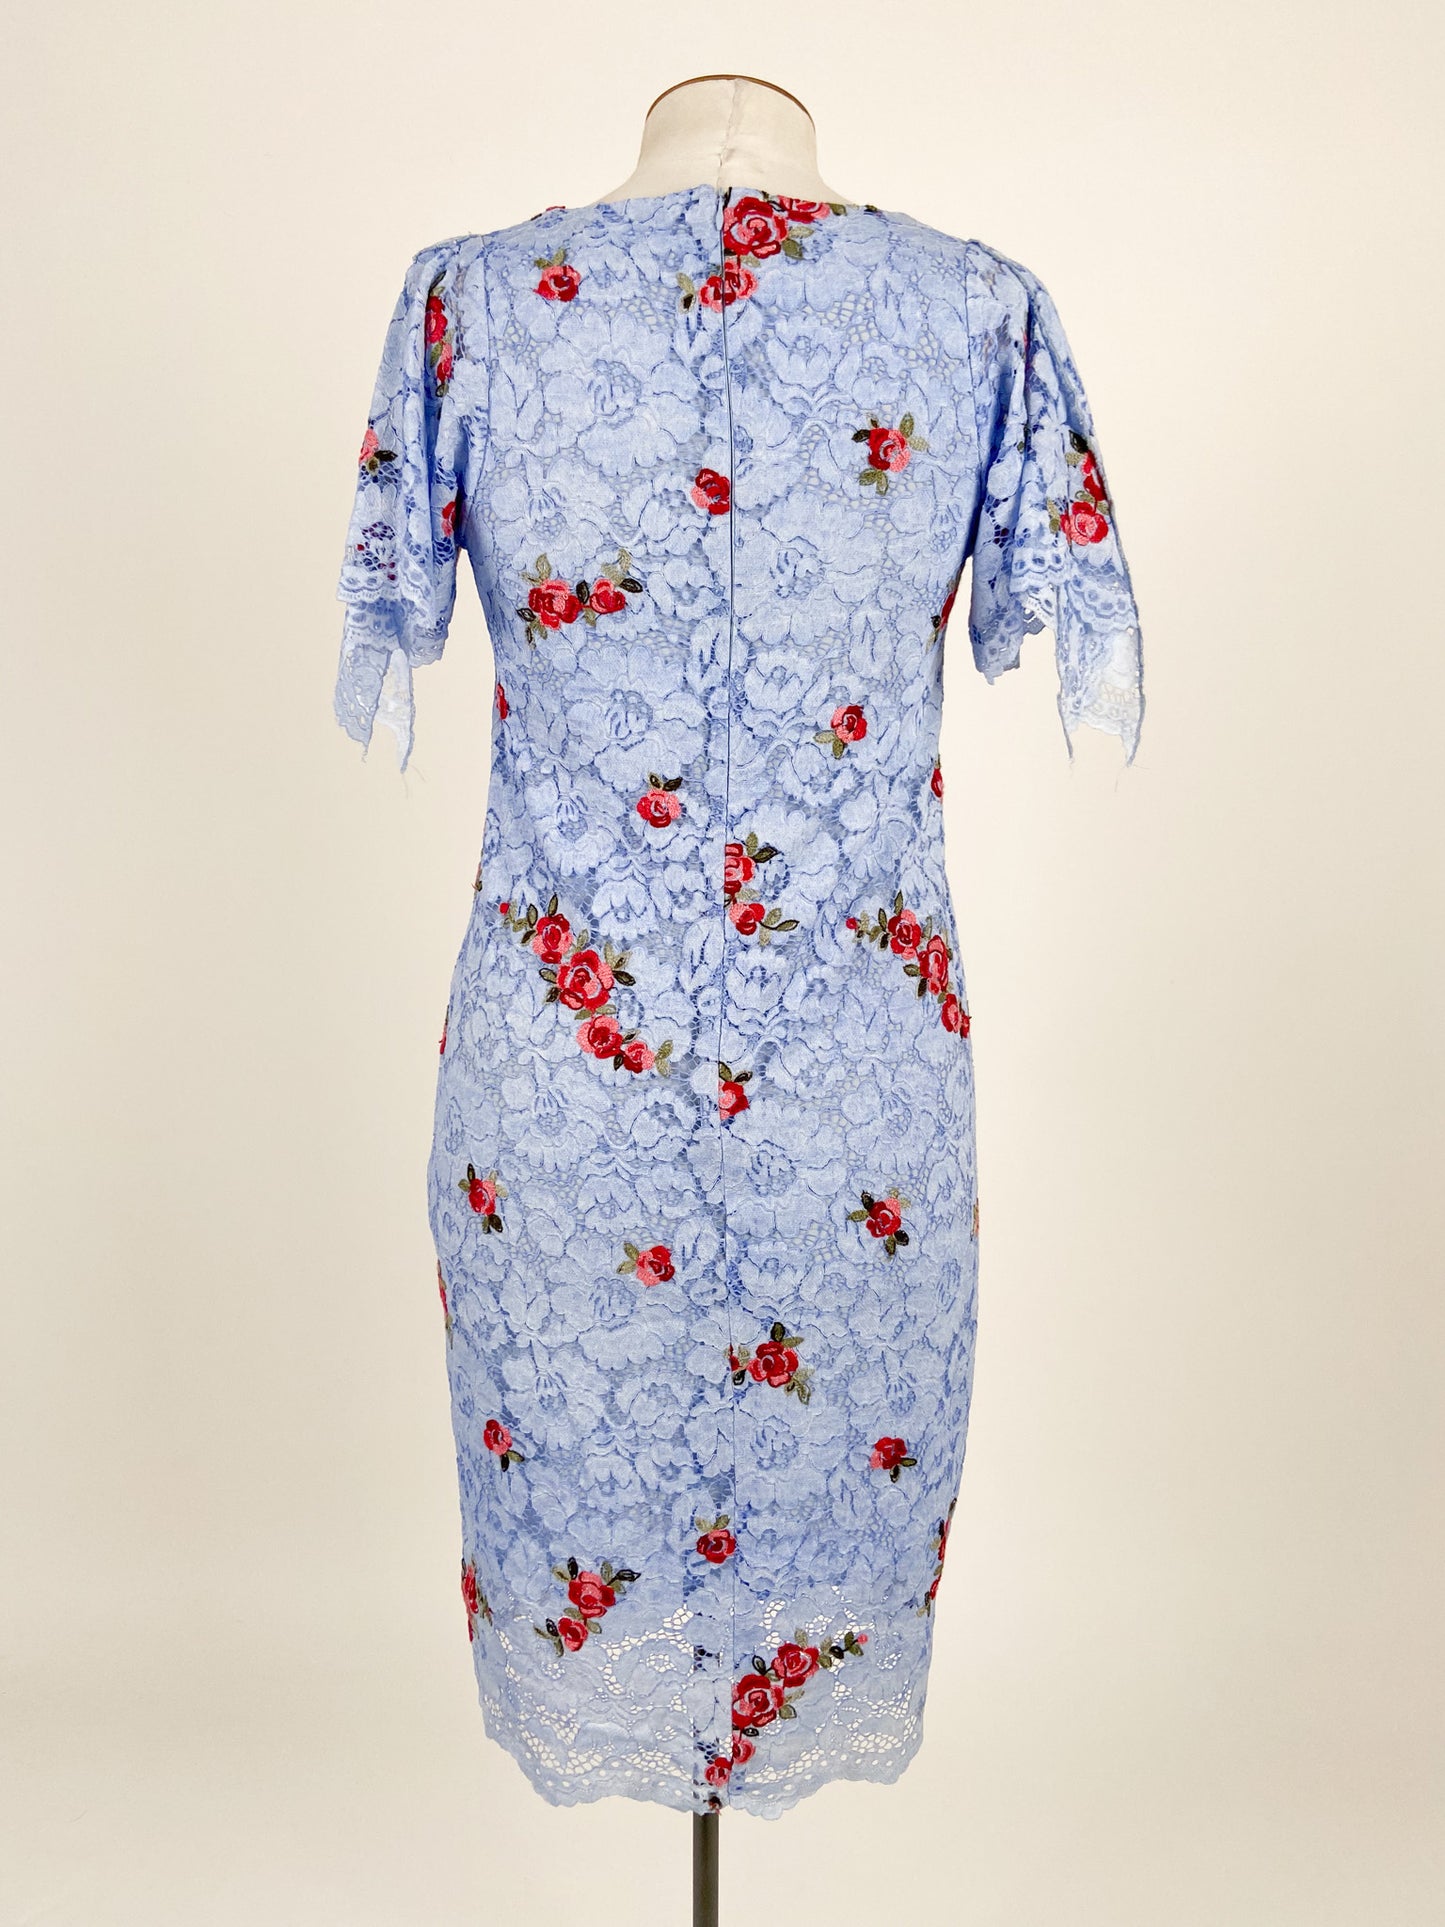 Trelise Cooper | Blue Formal/Workwear Dress | Size M